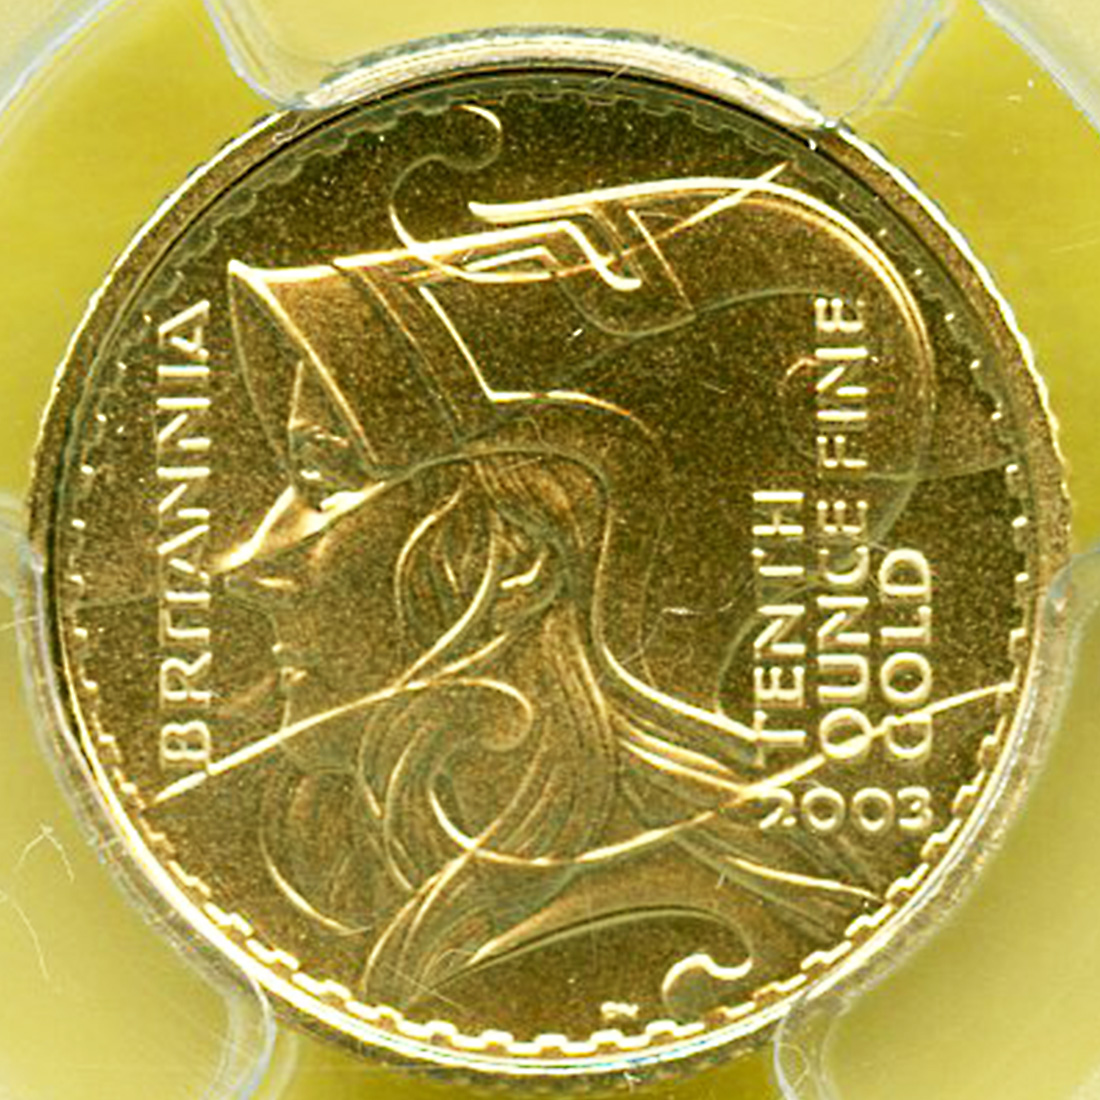 全コイン :: モダン :: イギリス 10ポンド金貨 女神ブリタニア エリザベス2世女王 2003 PR69DCAM/準最高♪